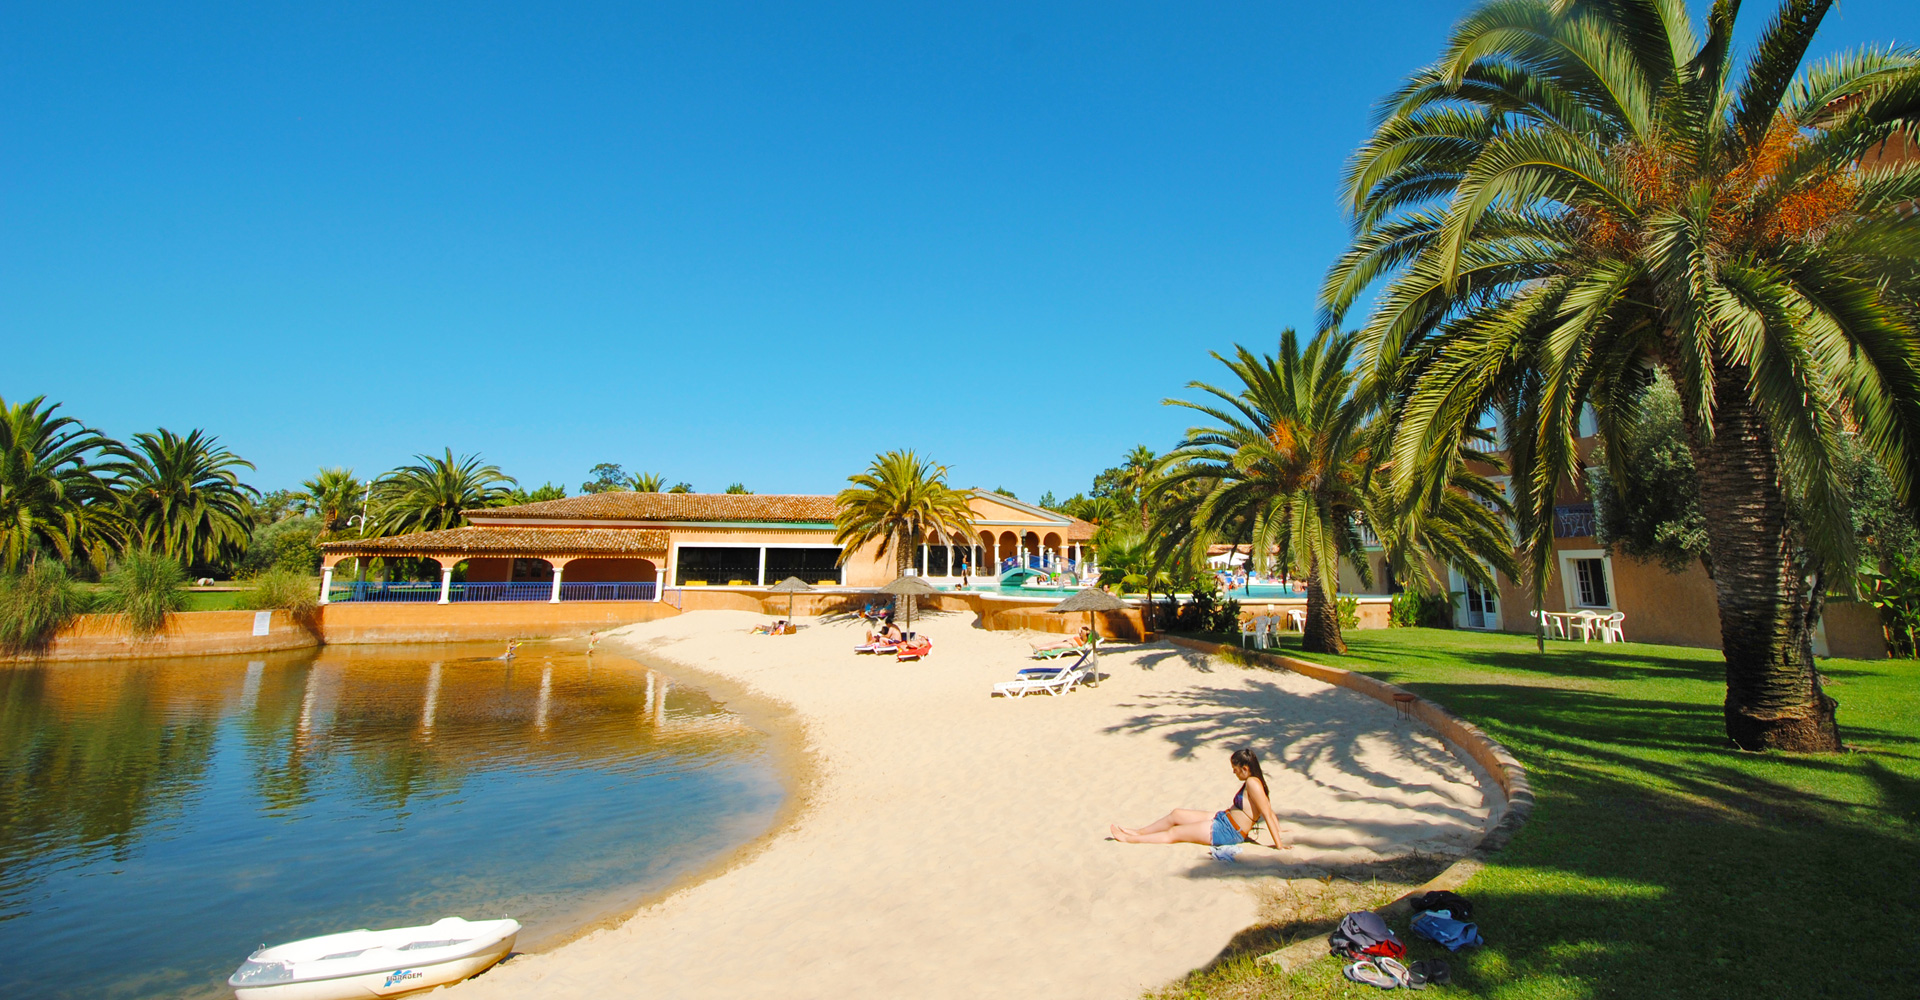 Hoteis em Mira, Turismo de Portugal, Praia de Mira, Herdade Lago Real